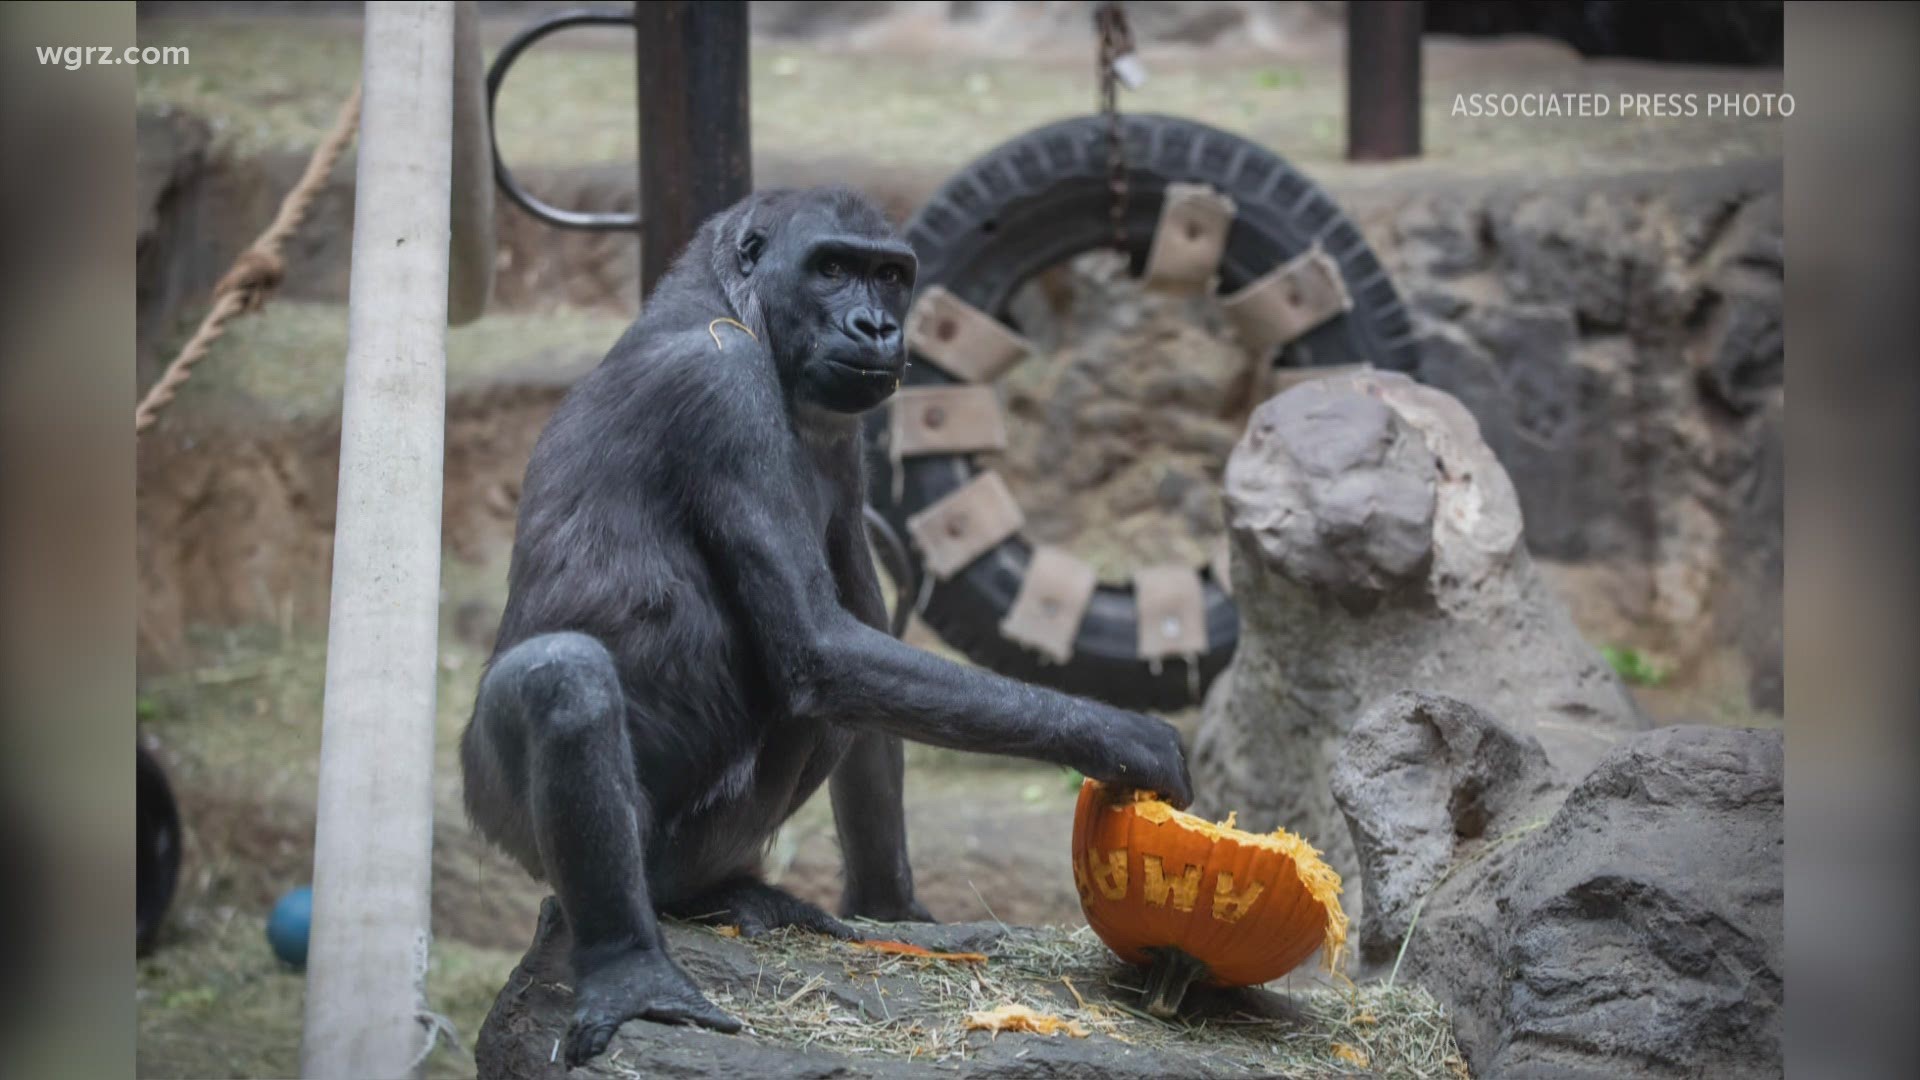 Amari the Gorilla moves to Atlanta zoo to start her own family